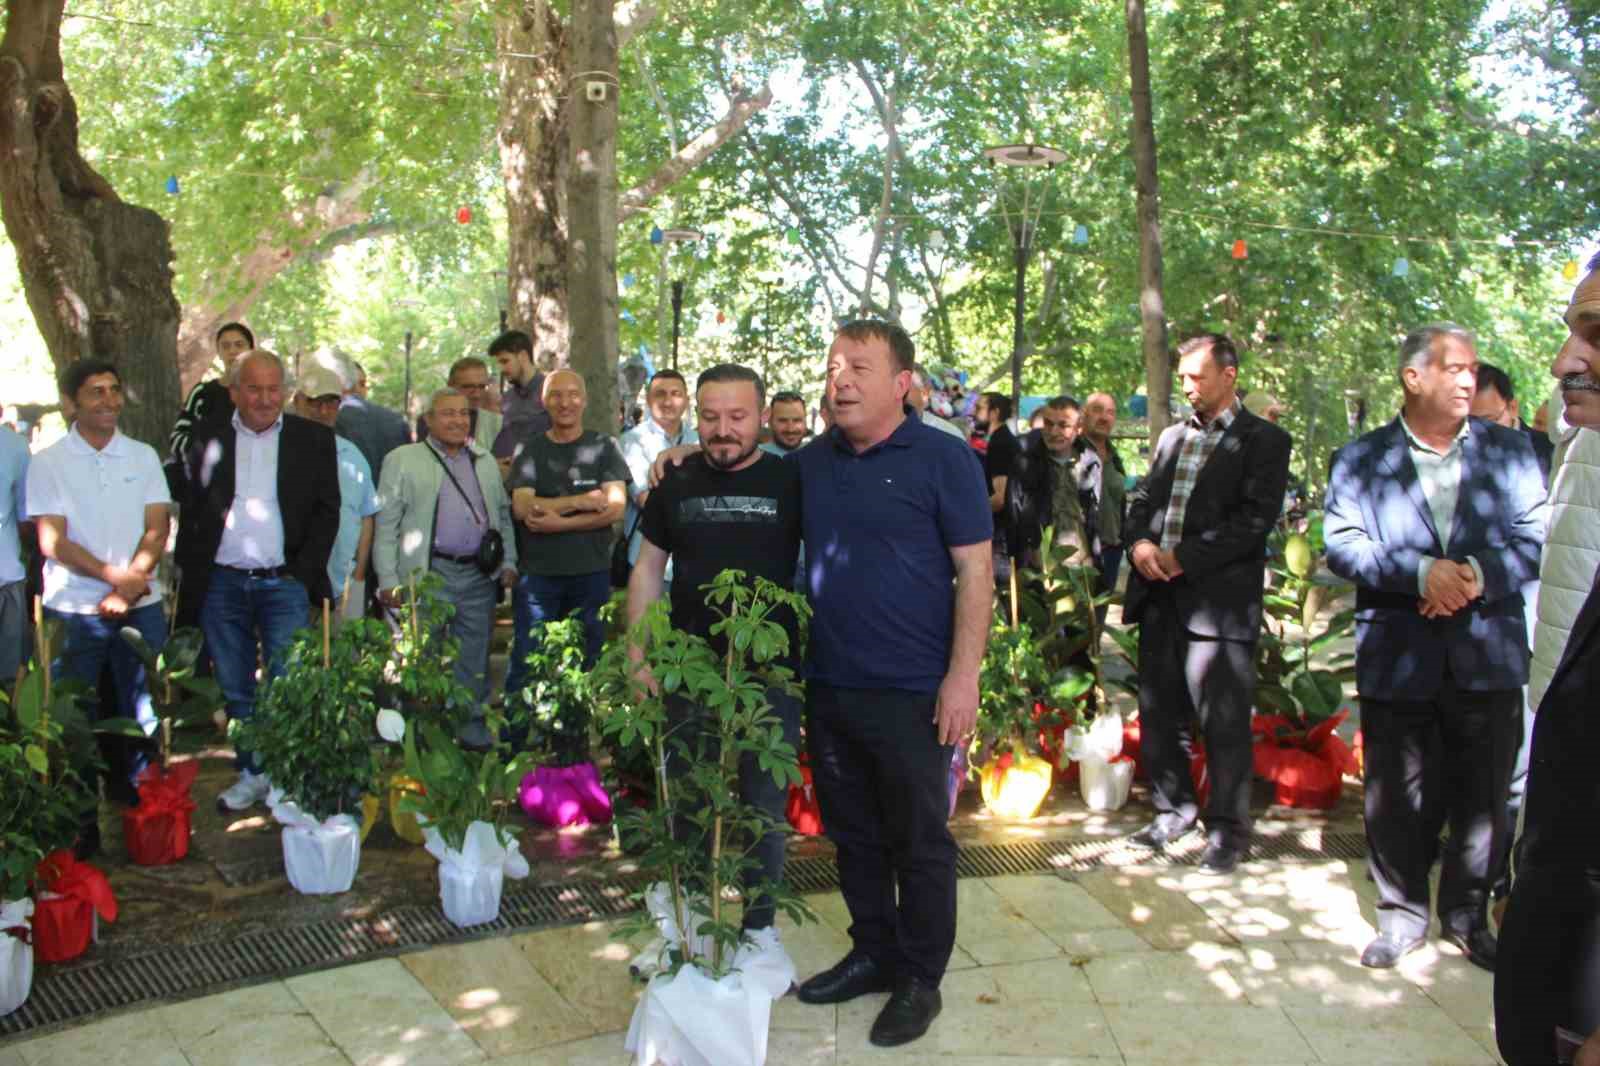 Mut’ta belediye başkanına gönderilen tebrik çiçekleri ihtiyaç sahiplerine yardıma dönüştü
